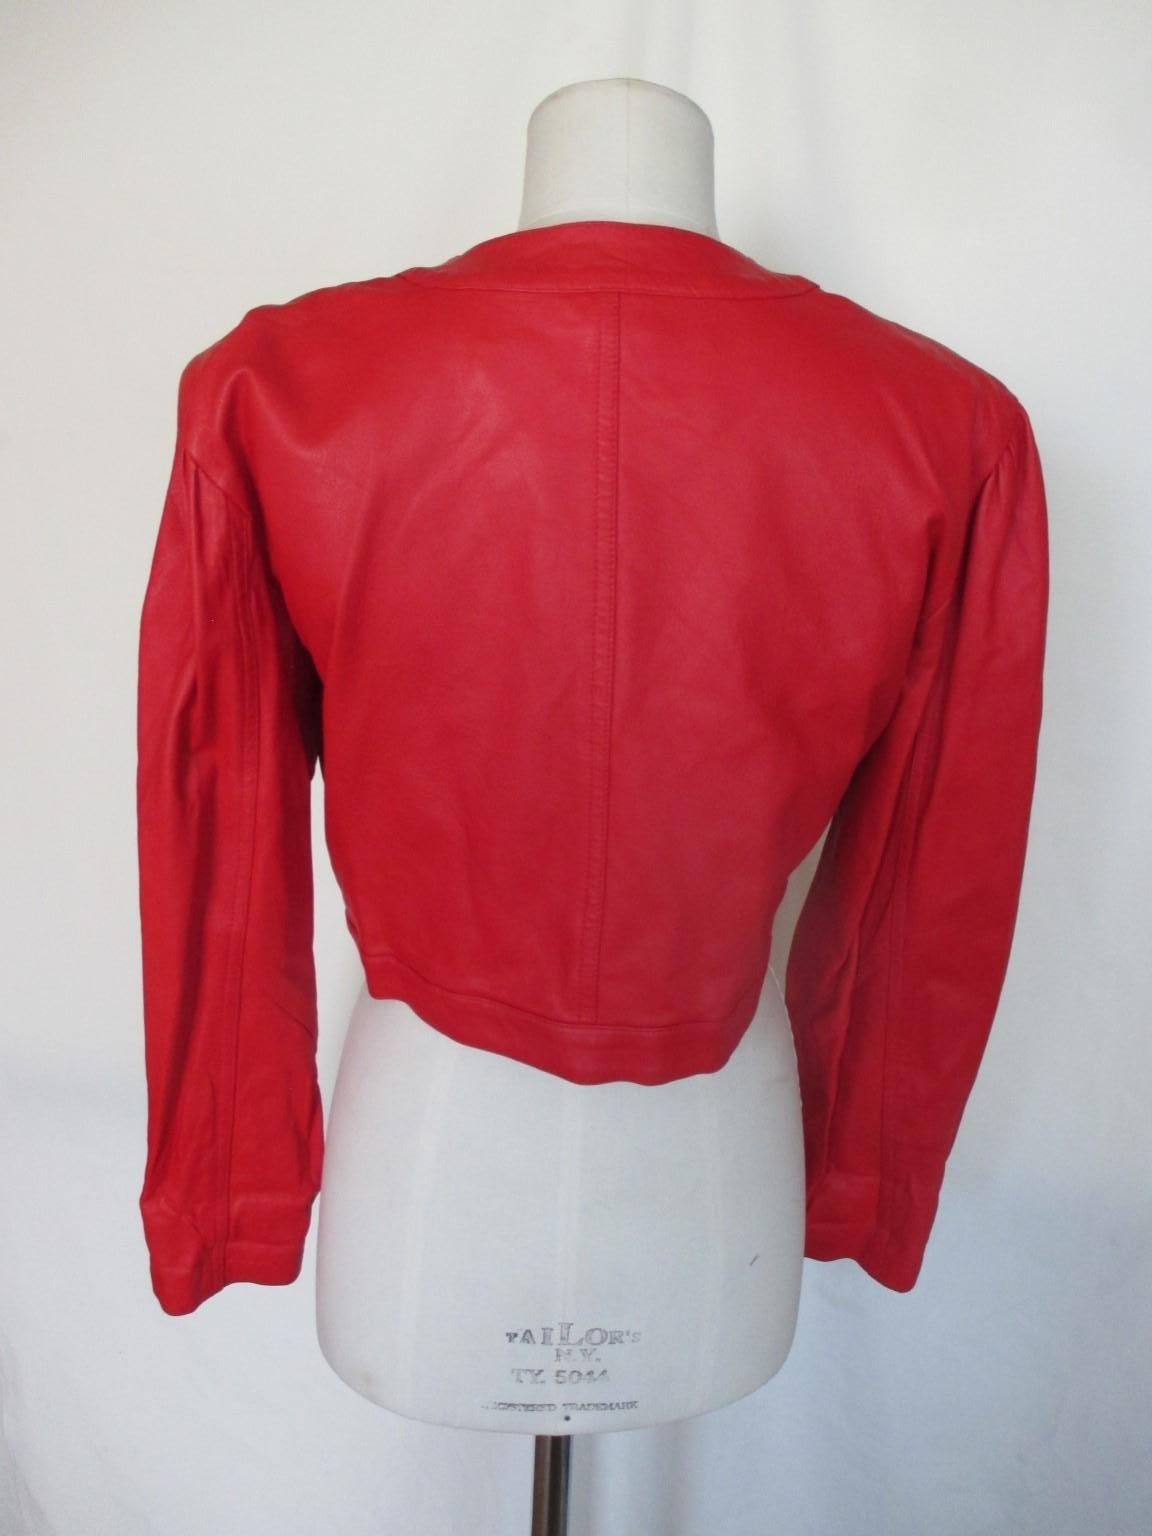 red satin bolero jacket